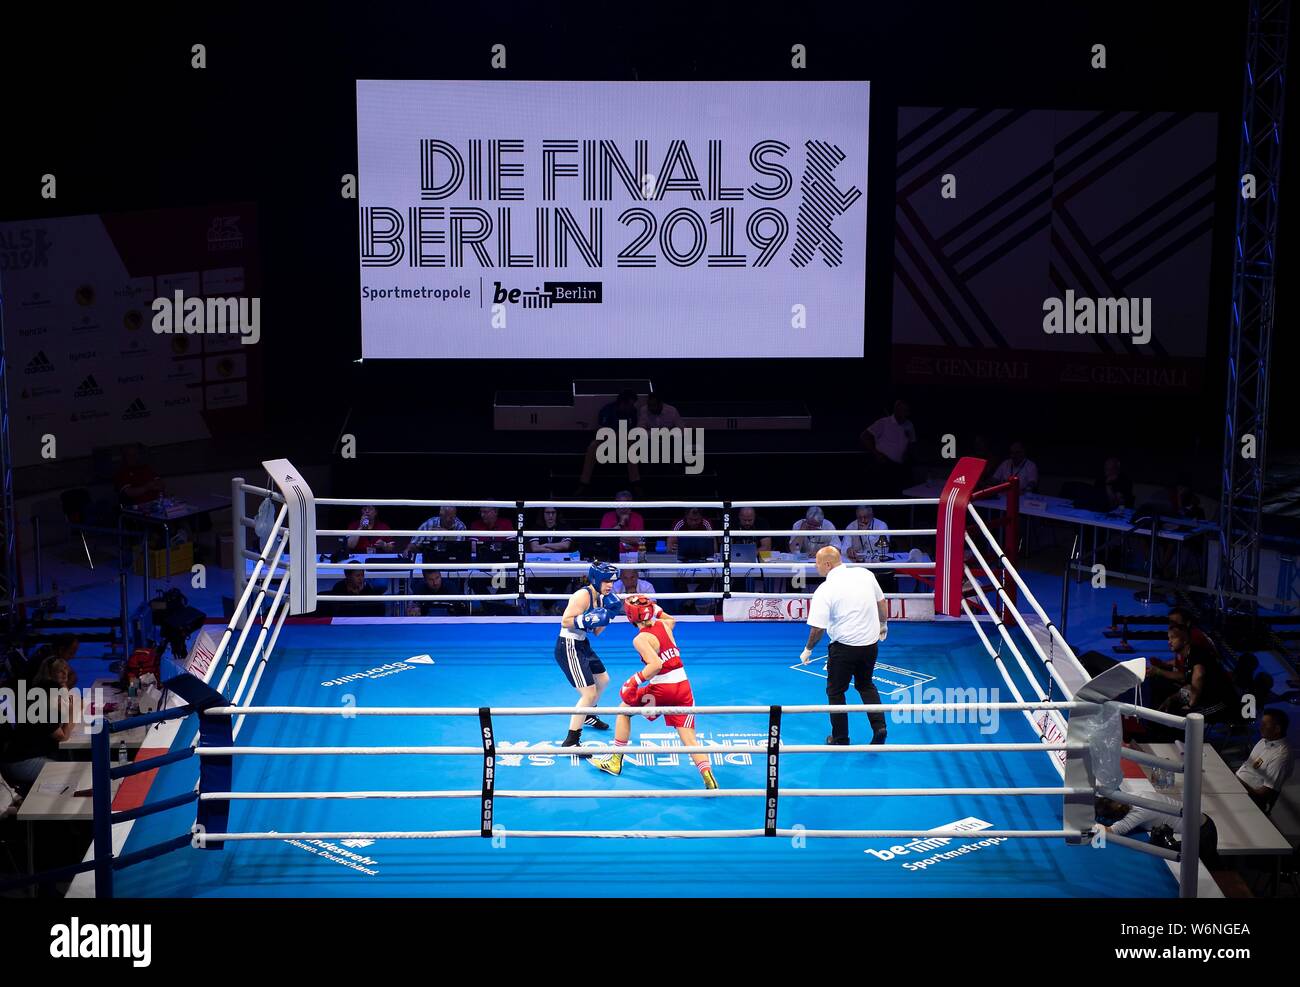 Anne Marie RETZER (rot) gegen Leonie SCHAUER (blau), Aktion, hinter einem  Poster' das Finale Berlin 2019". Session 5 - Viertelfinale, Frauen W Leicht  (W60 kg), Anne Marie RETZER (rot) gegen Leonie SCHAUER (